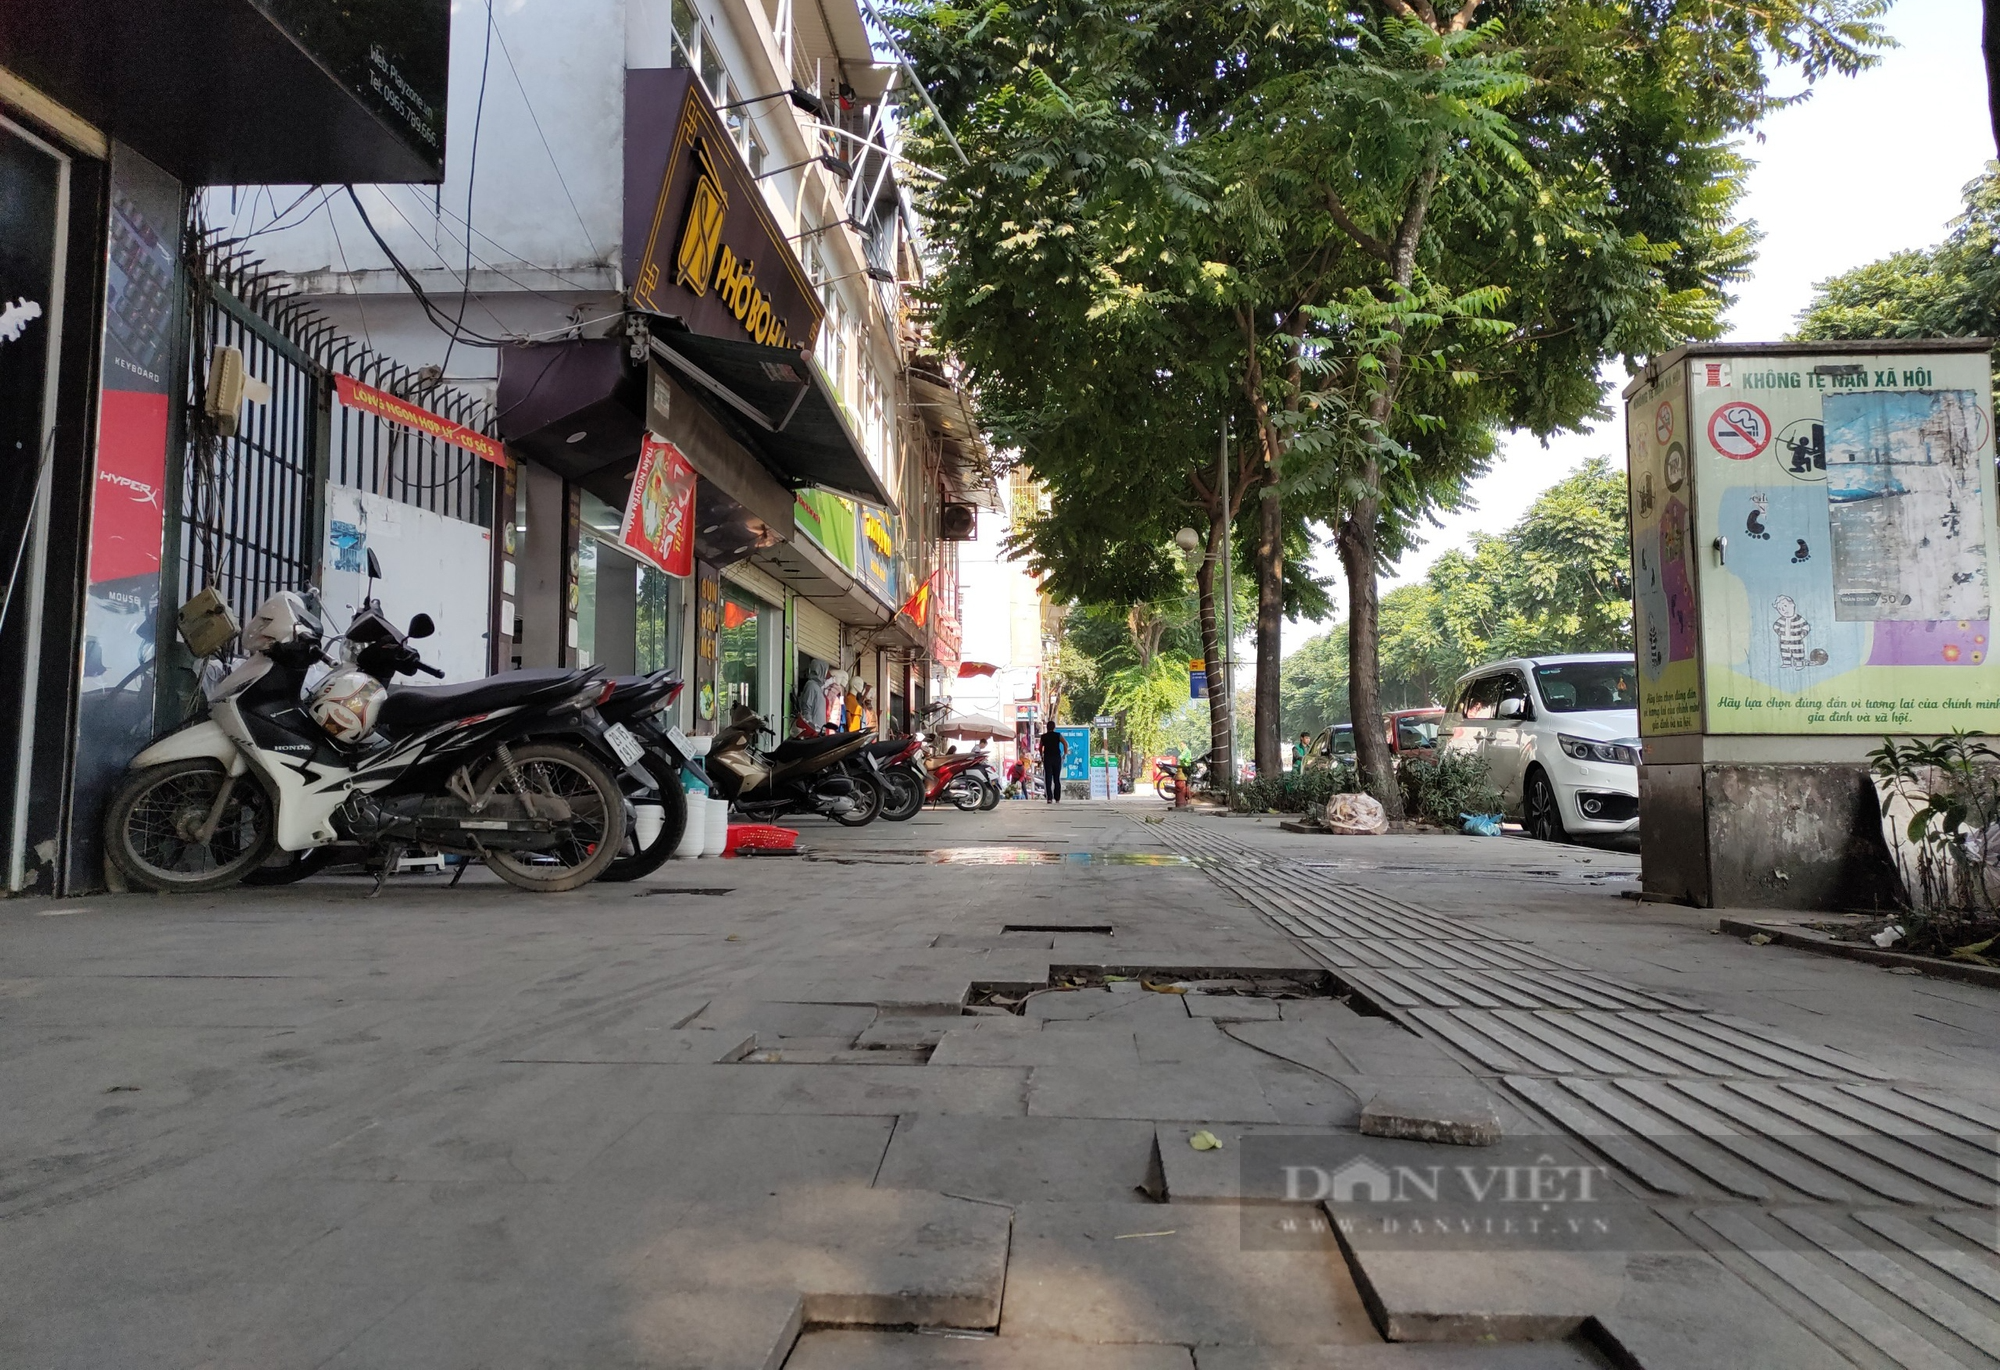 Đá tự nhiên có độ bền 70 năm vỡ nát trên con phố kiểu mẫu ở Hà Nội - Ảnh 11.